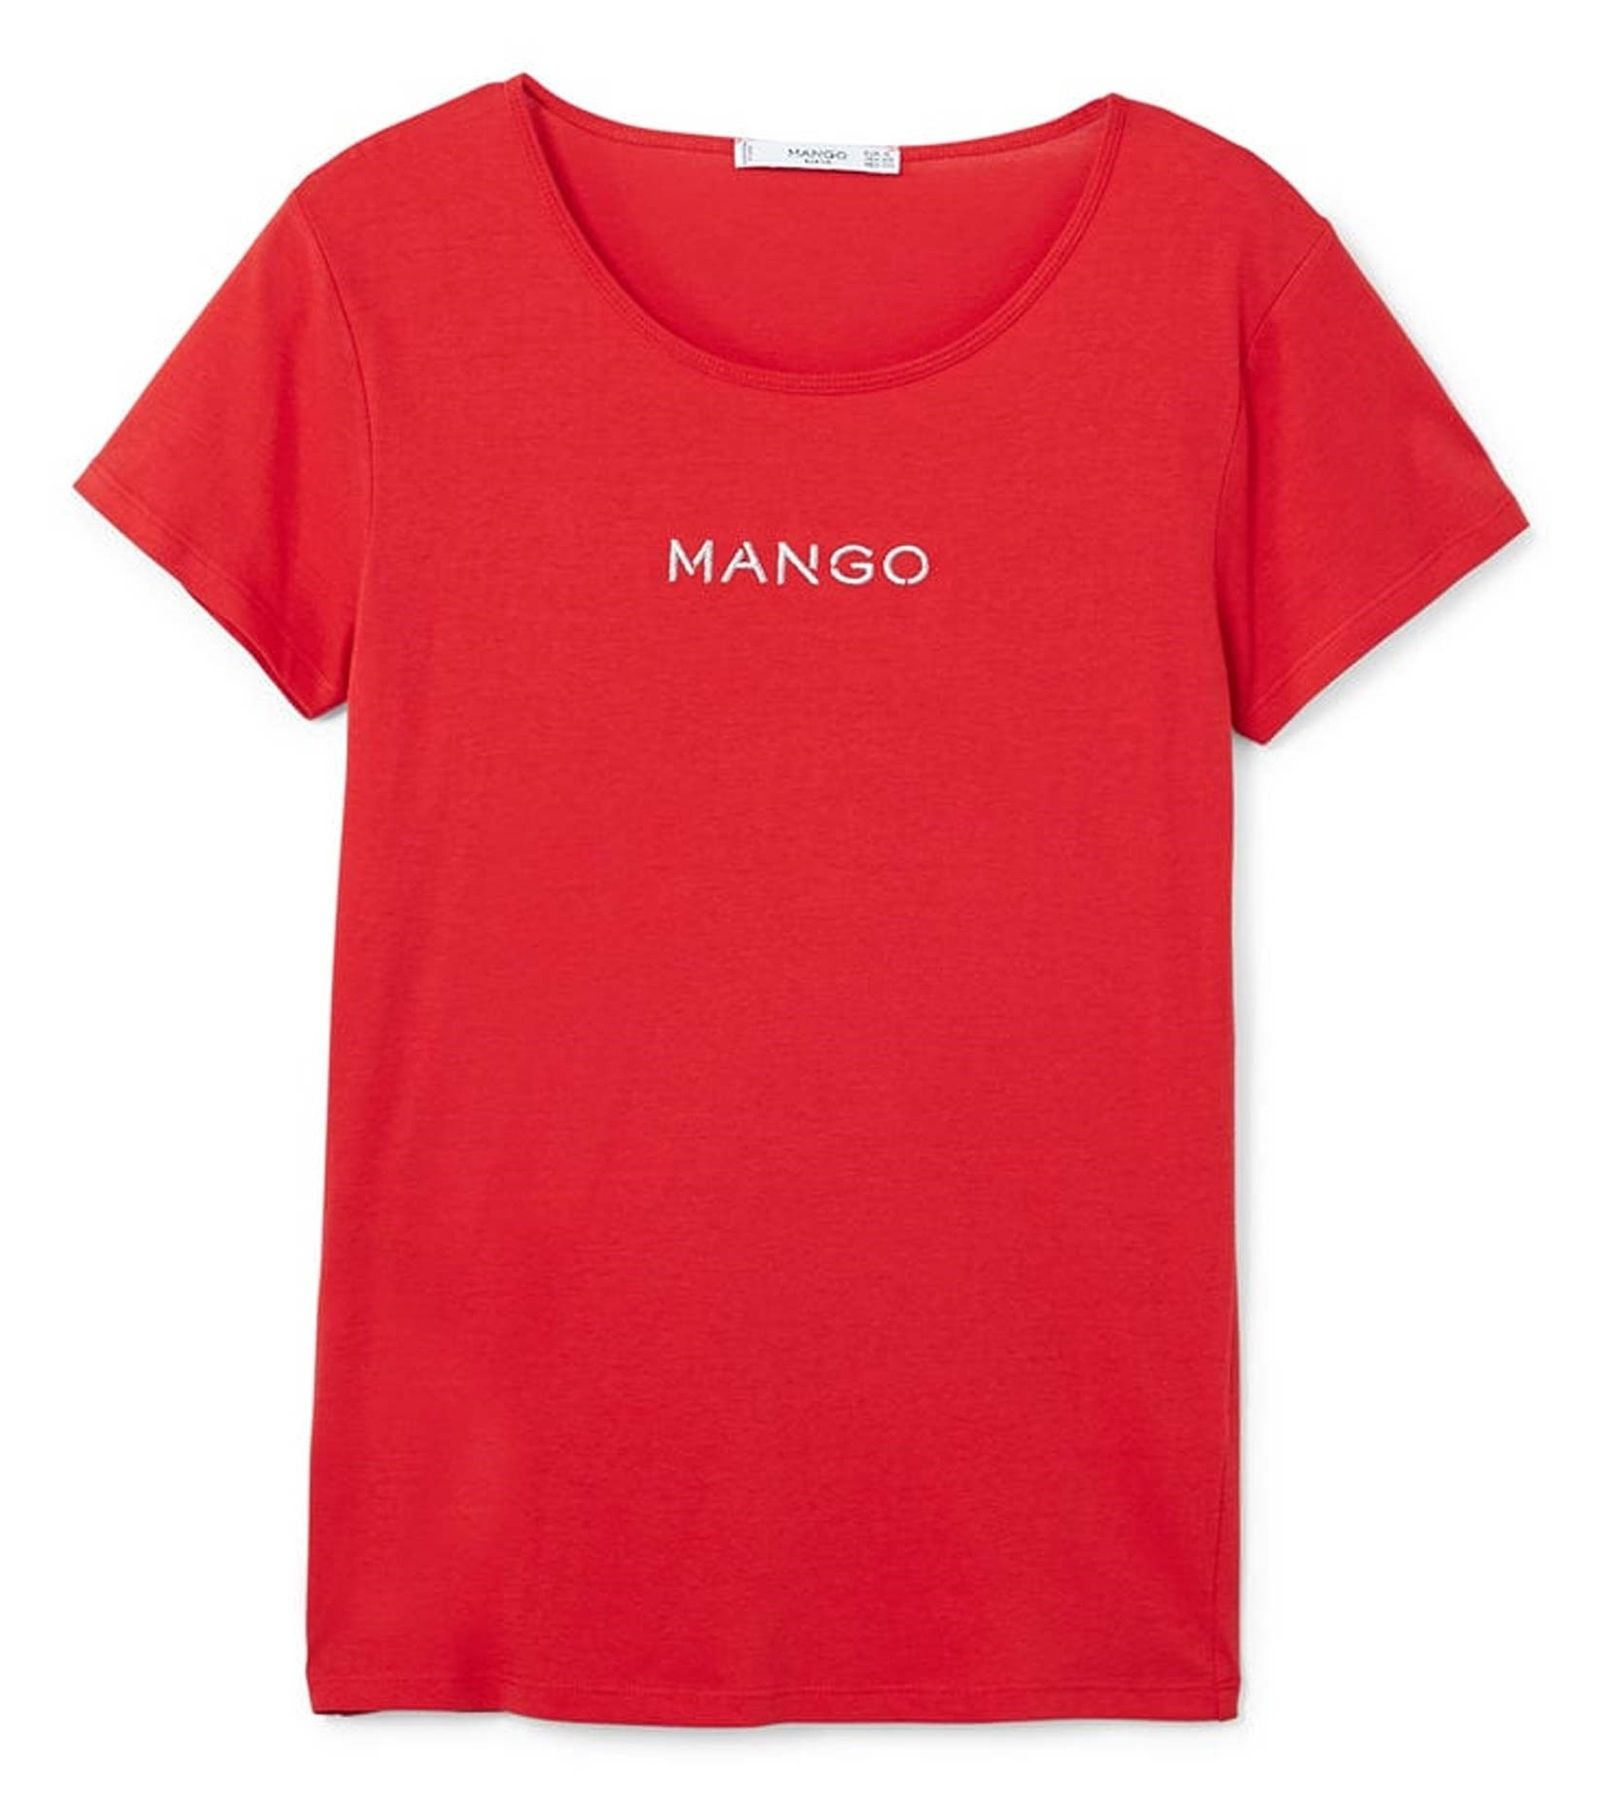 تی شرت نخی یقه گرد زنانه - مانگو - قرمز  - 2